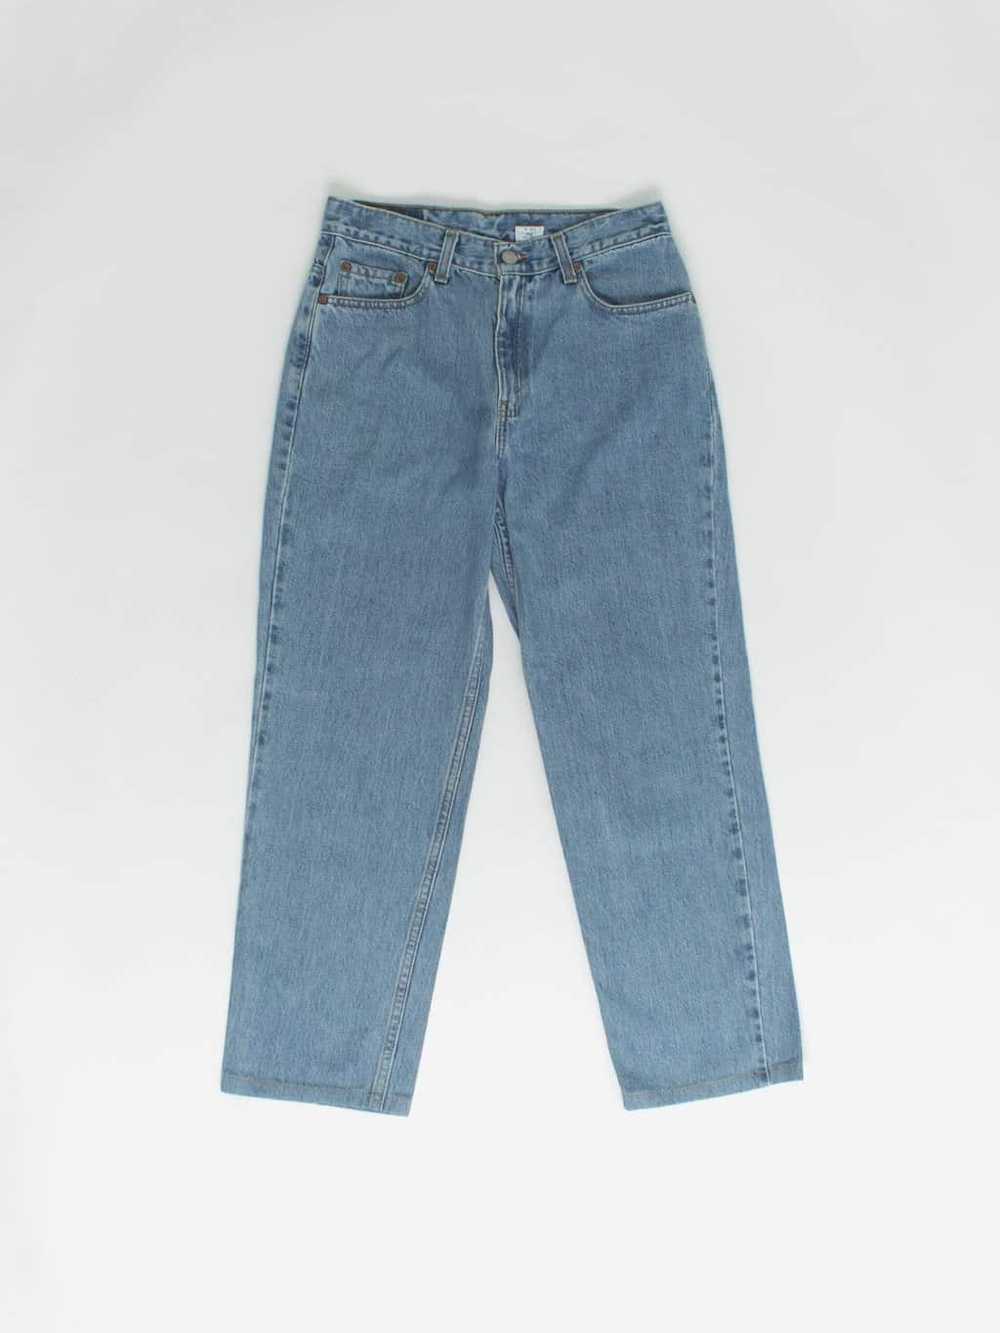 Vintage Levis 512 jeans 28 x 26 blue stonewash 90… - image 1